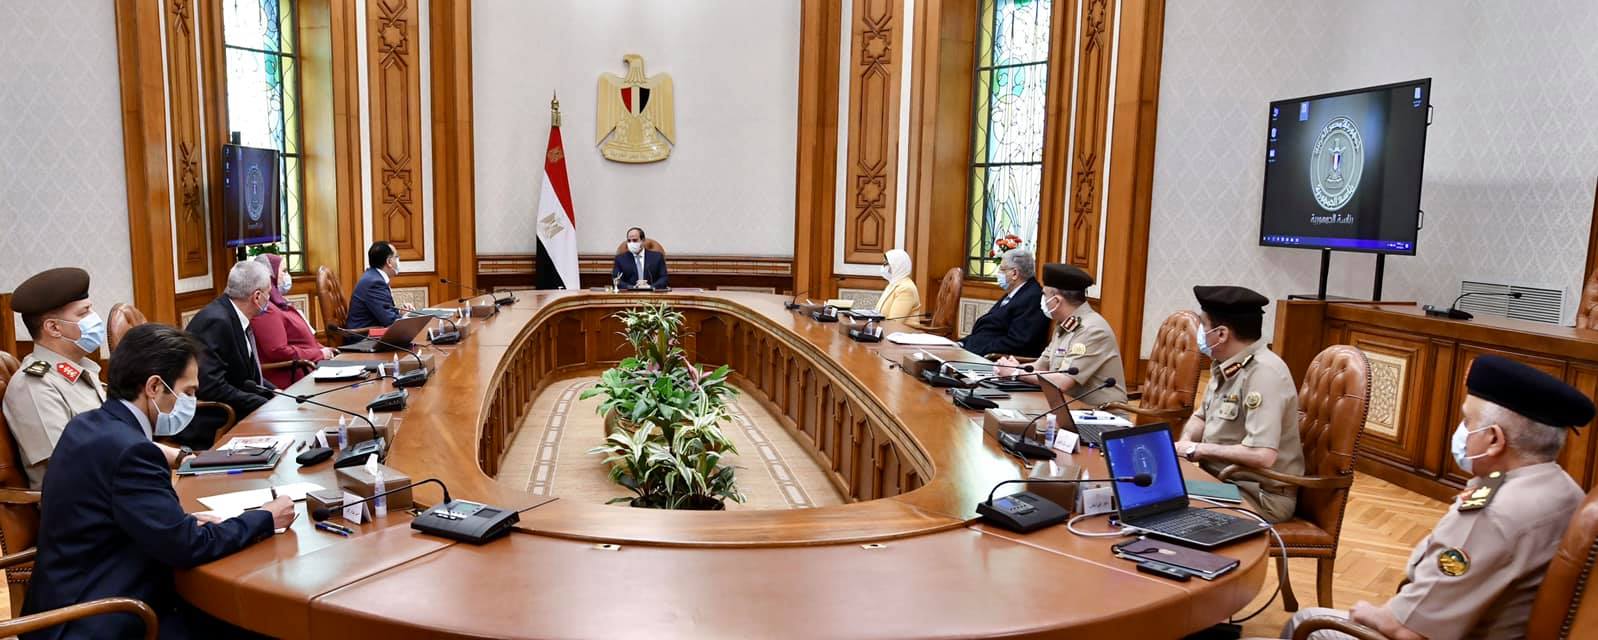 الرئيس يتابع لموقف التنفيذي لإقامة "منظومة متكاملة لإنتاج الأطراف الصناعية في مصر"